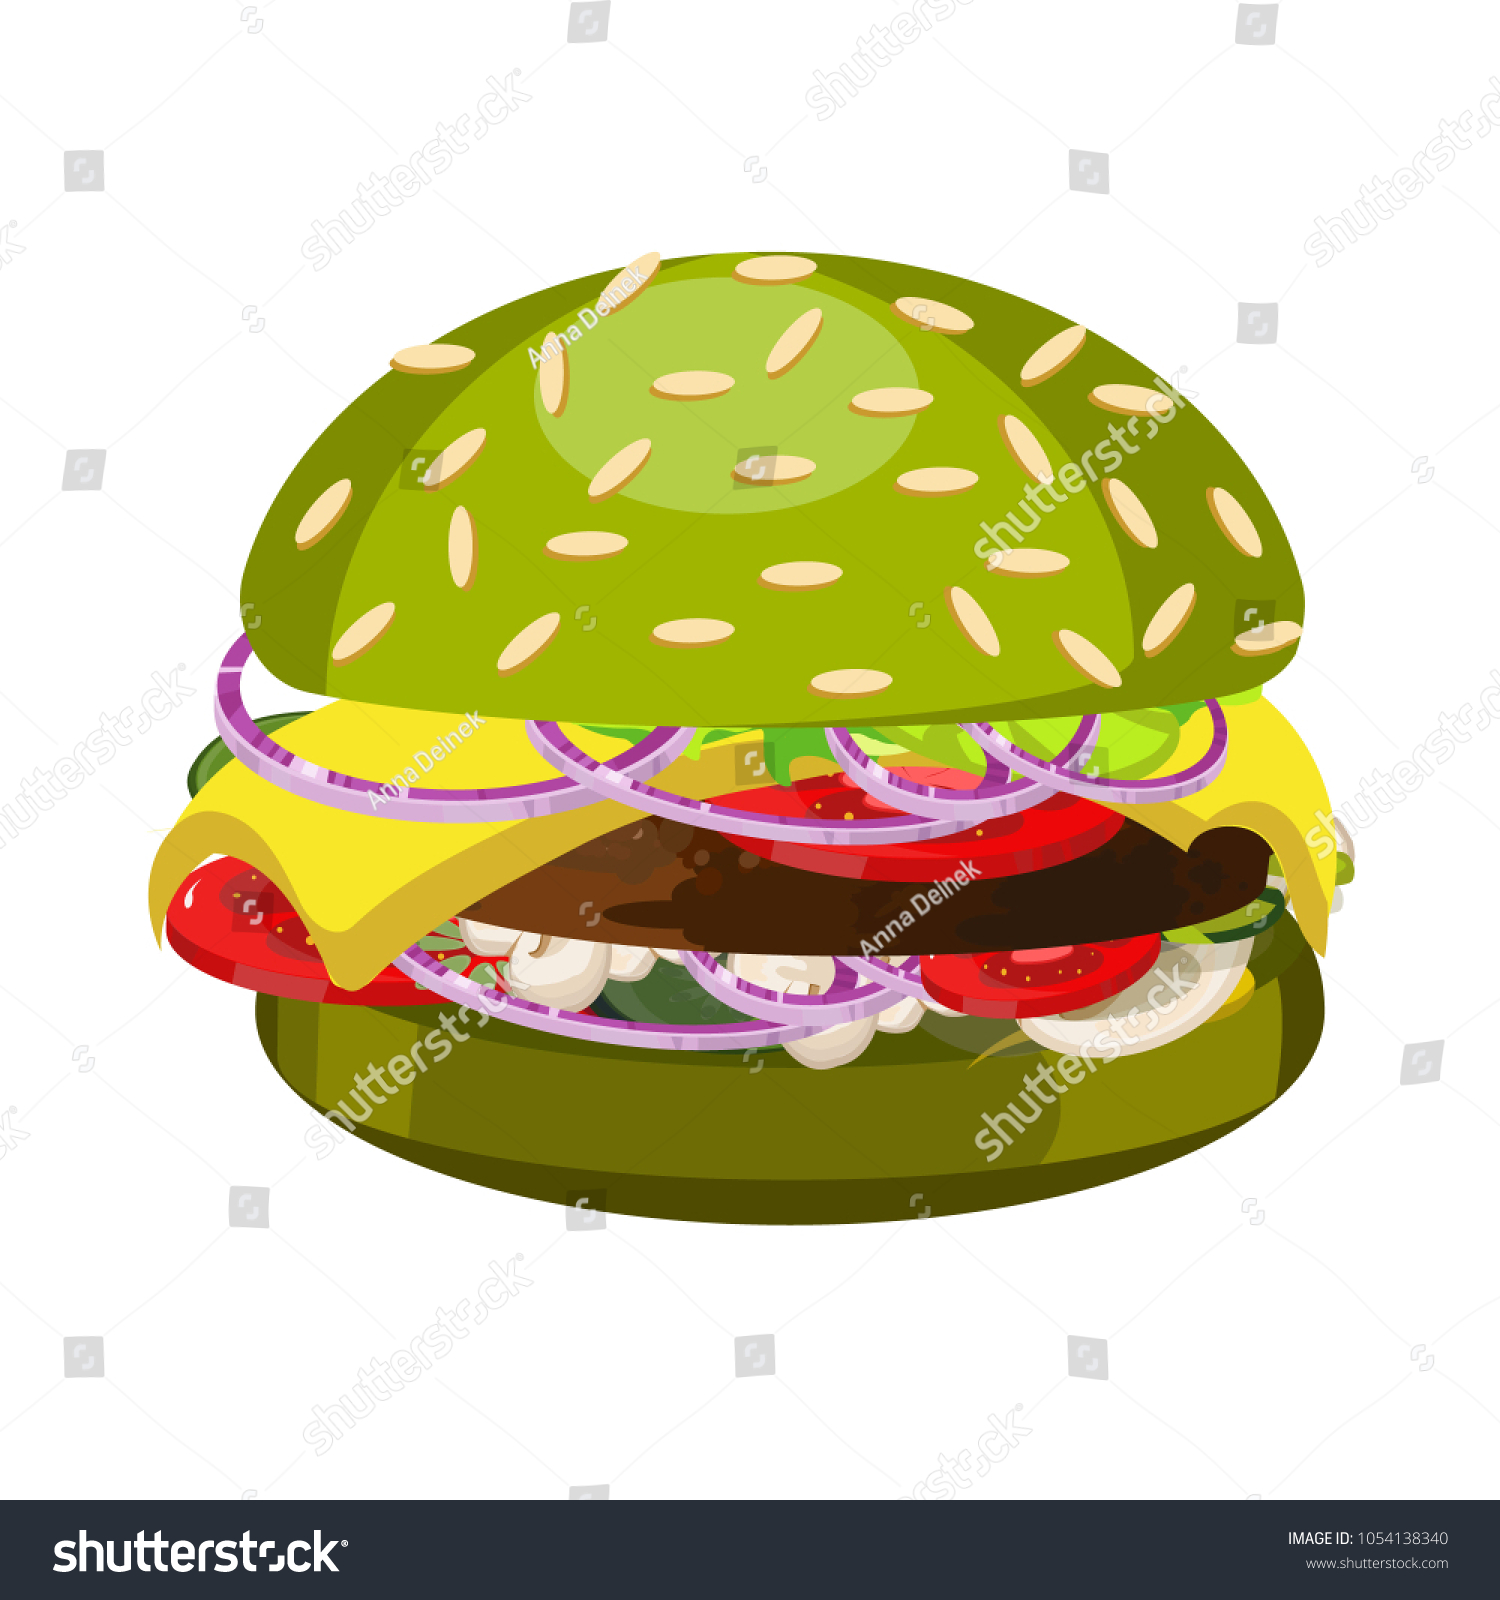 Burger Green Bun Delicious Food Fast Stock Vector 1054138340 ...